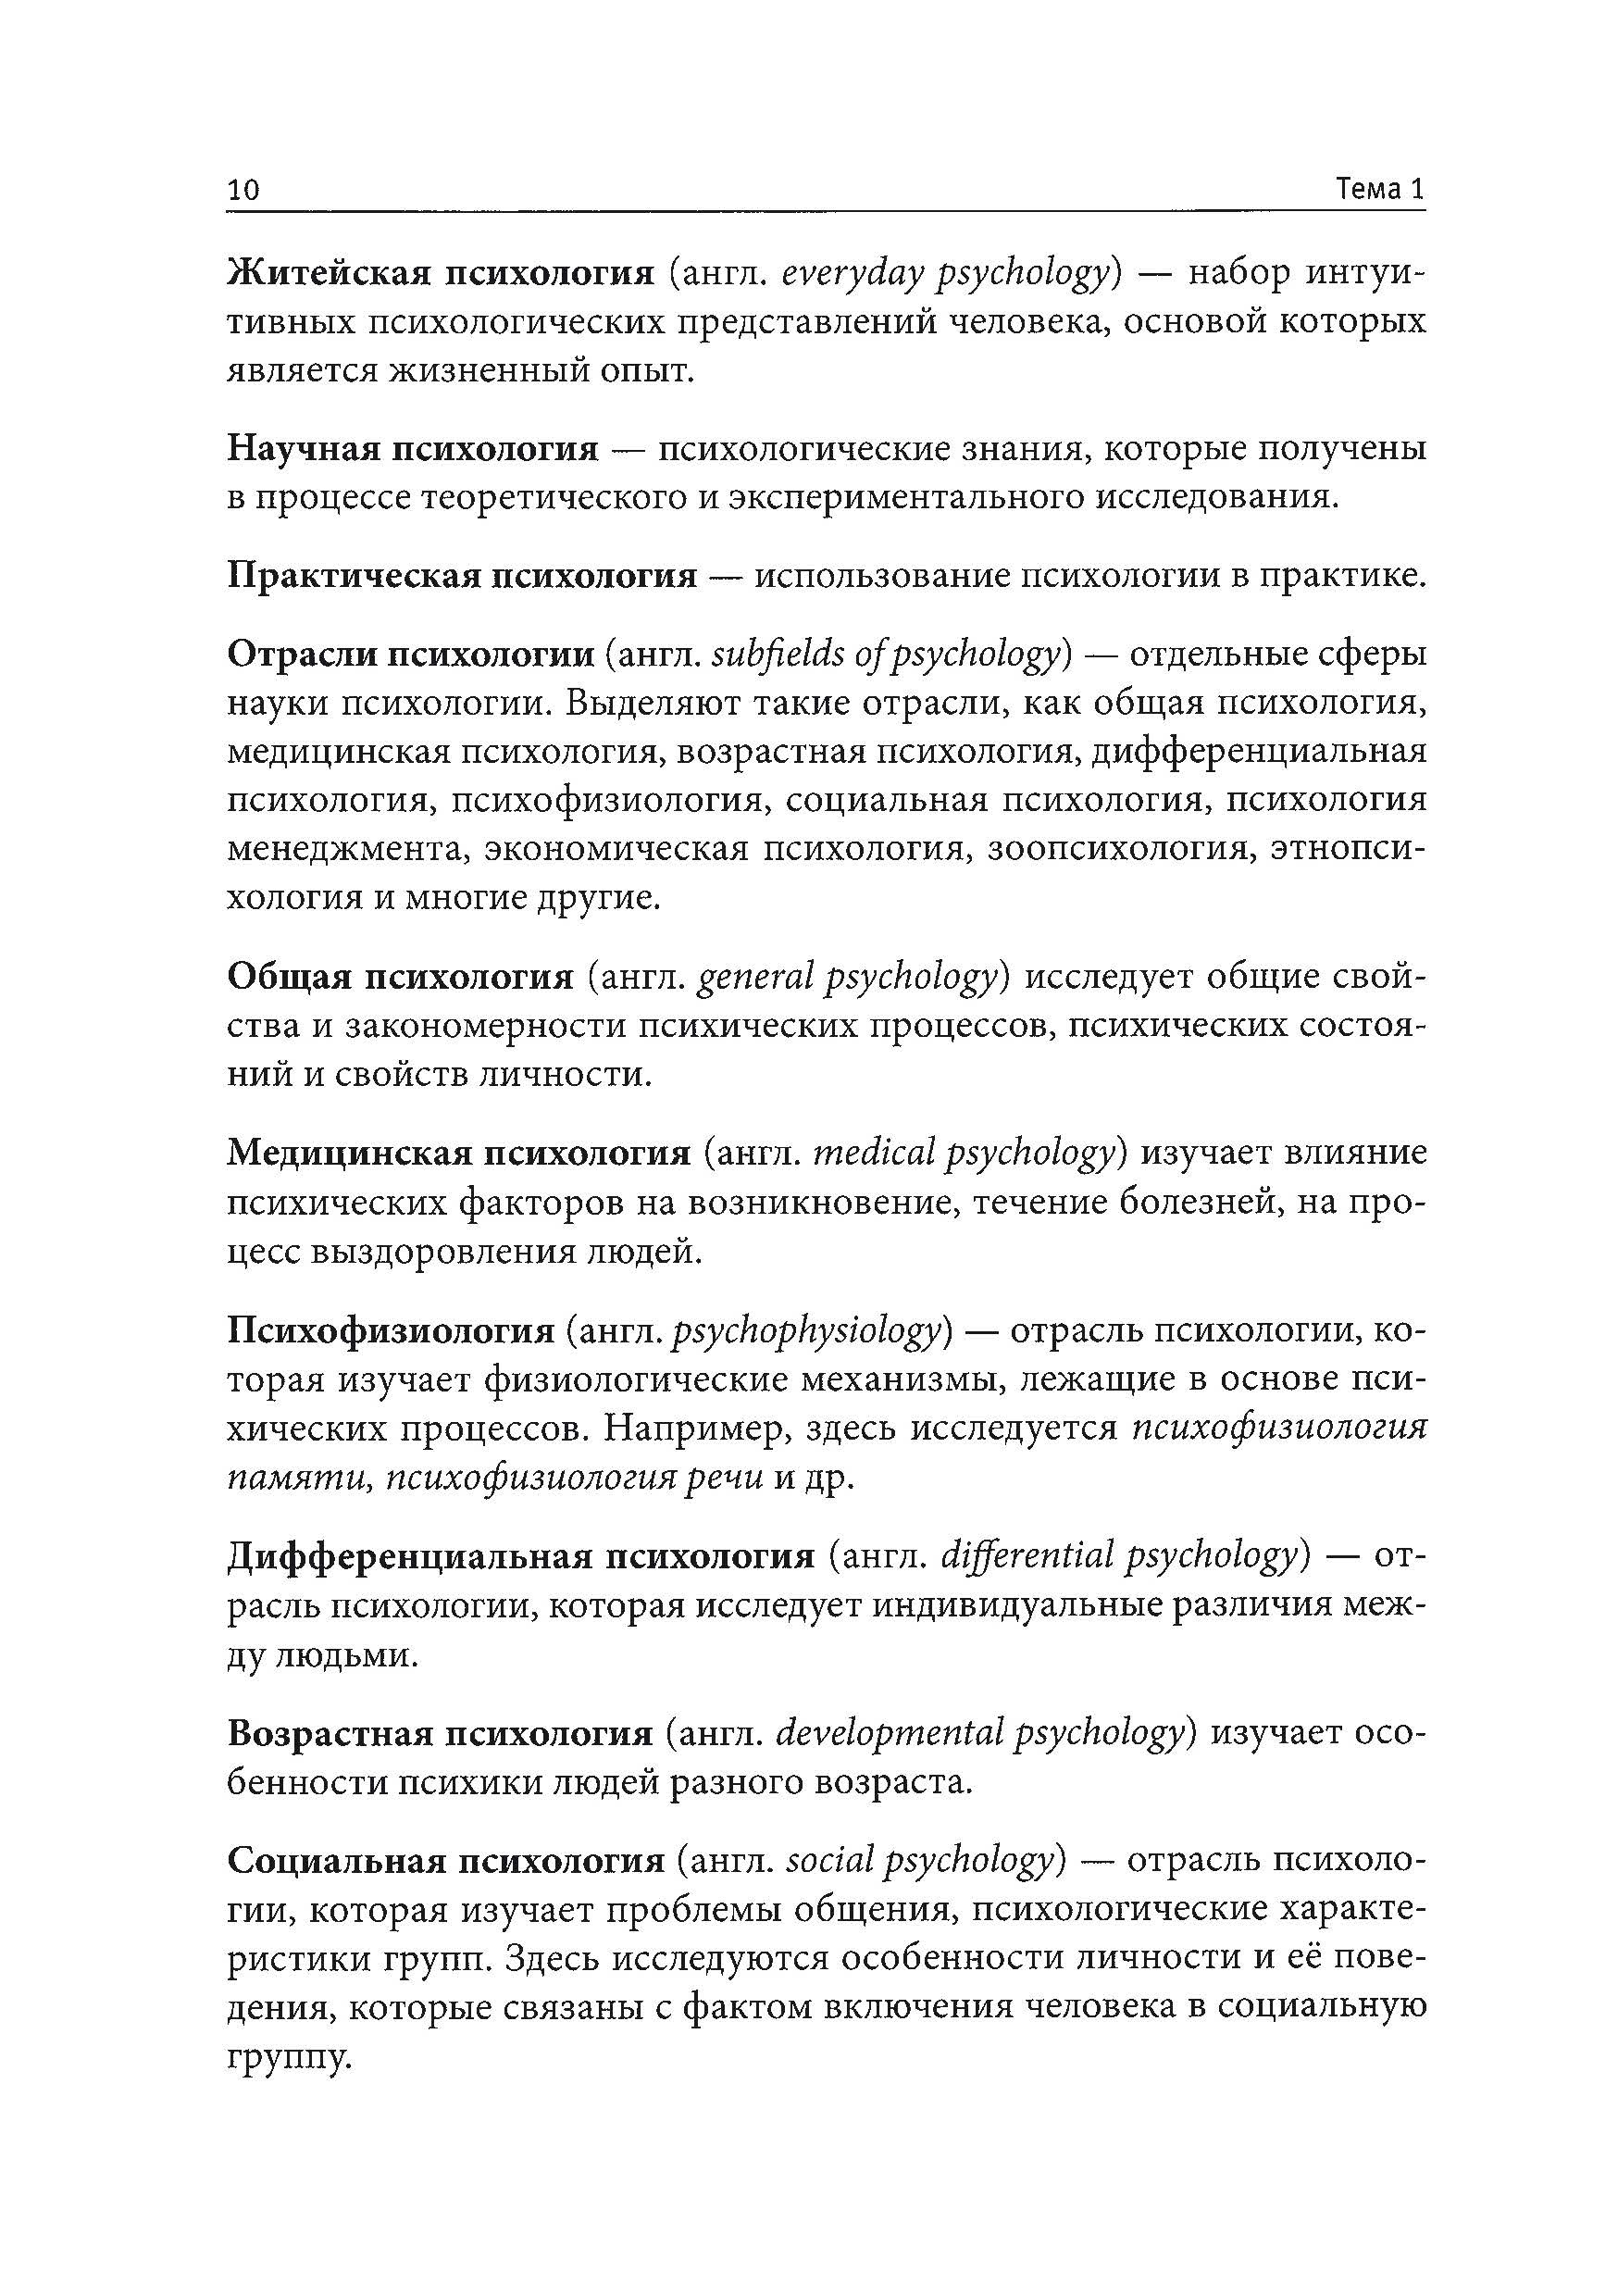 Азбука психологии. Автор — Е.В. Бойченко, А.Н. Полякова, К.Н. Поляков. 